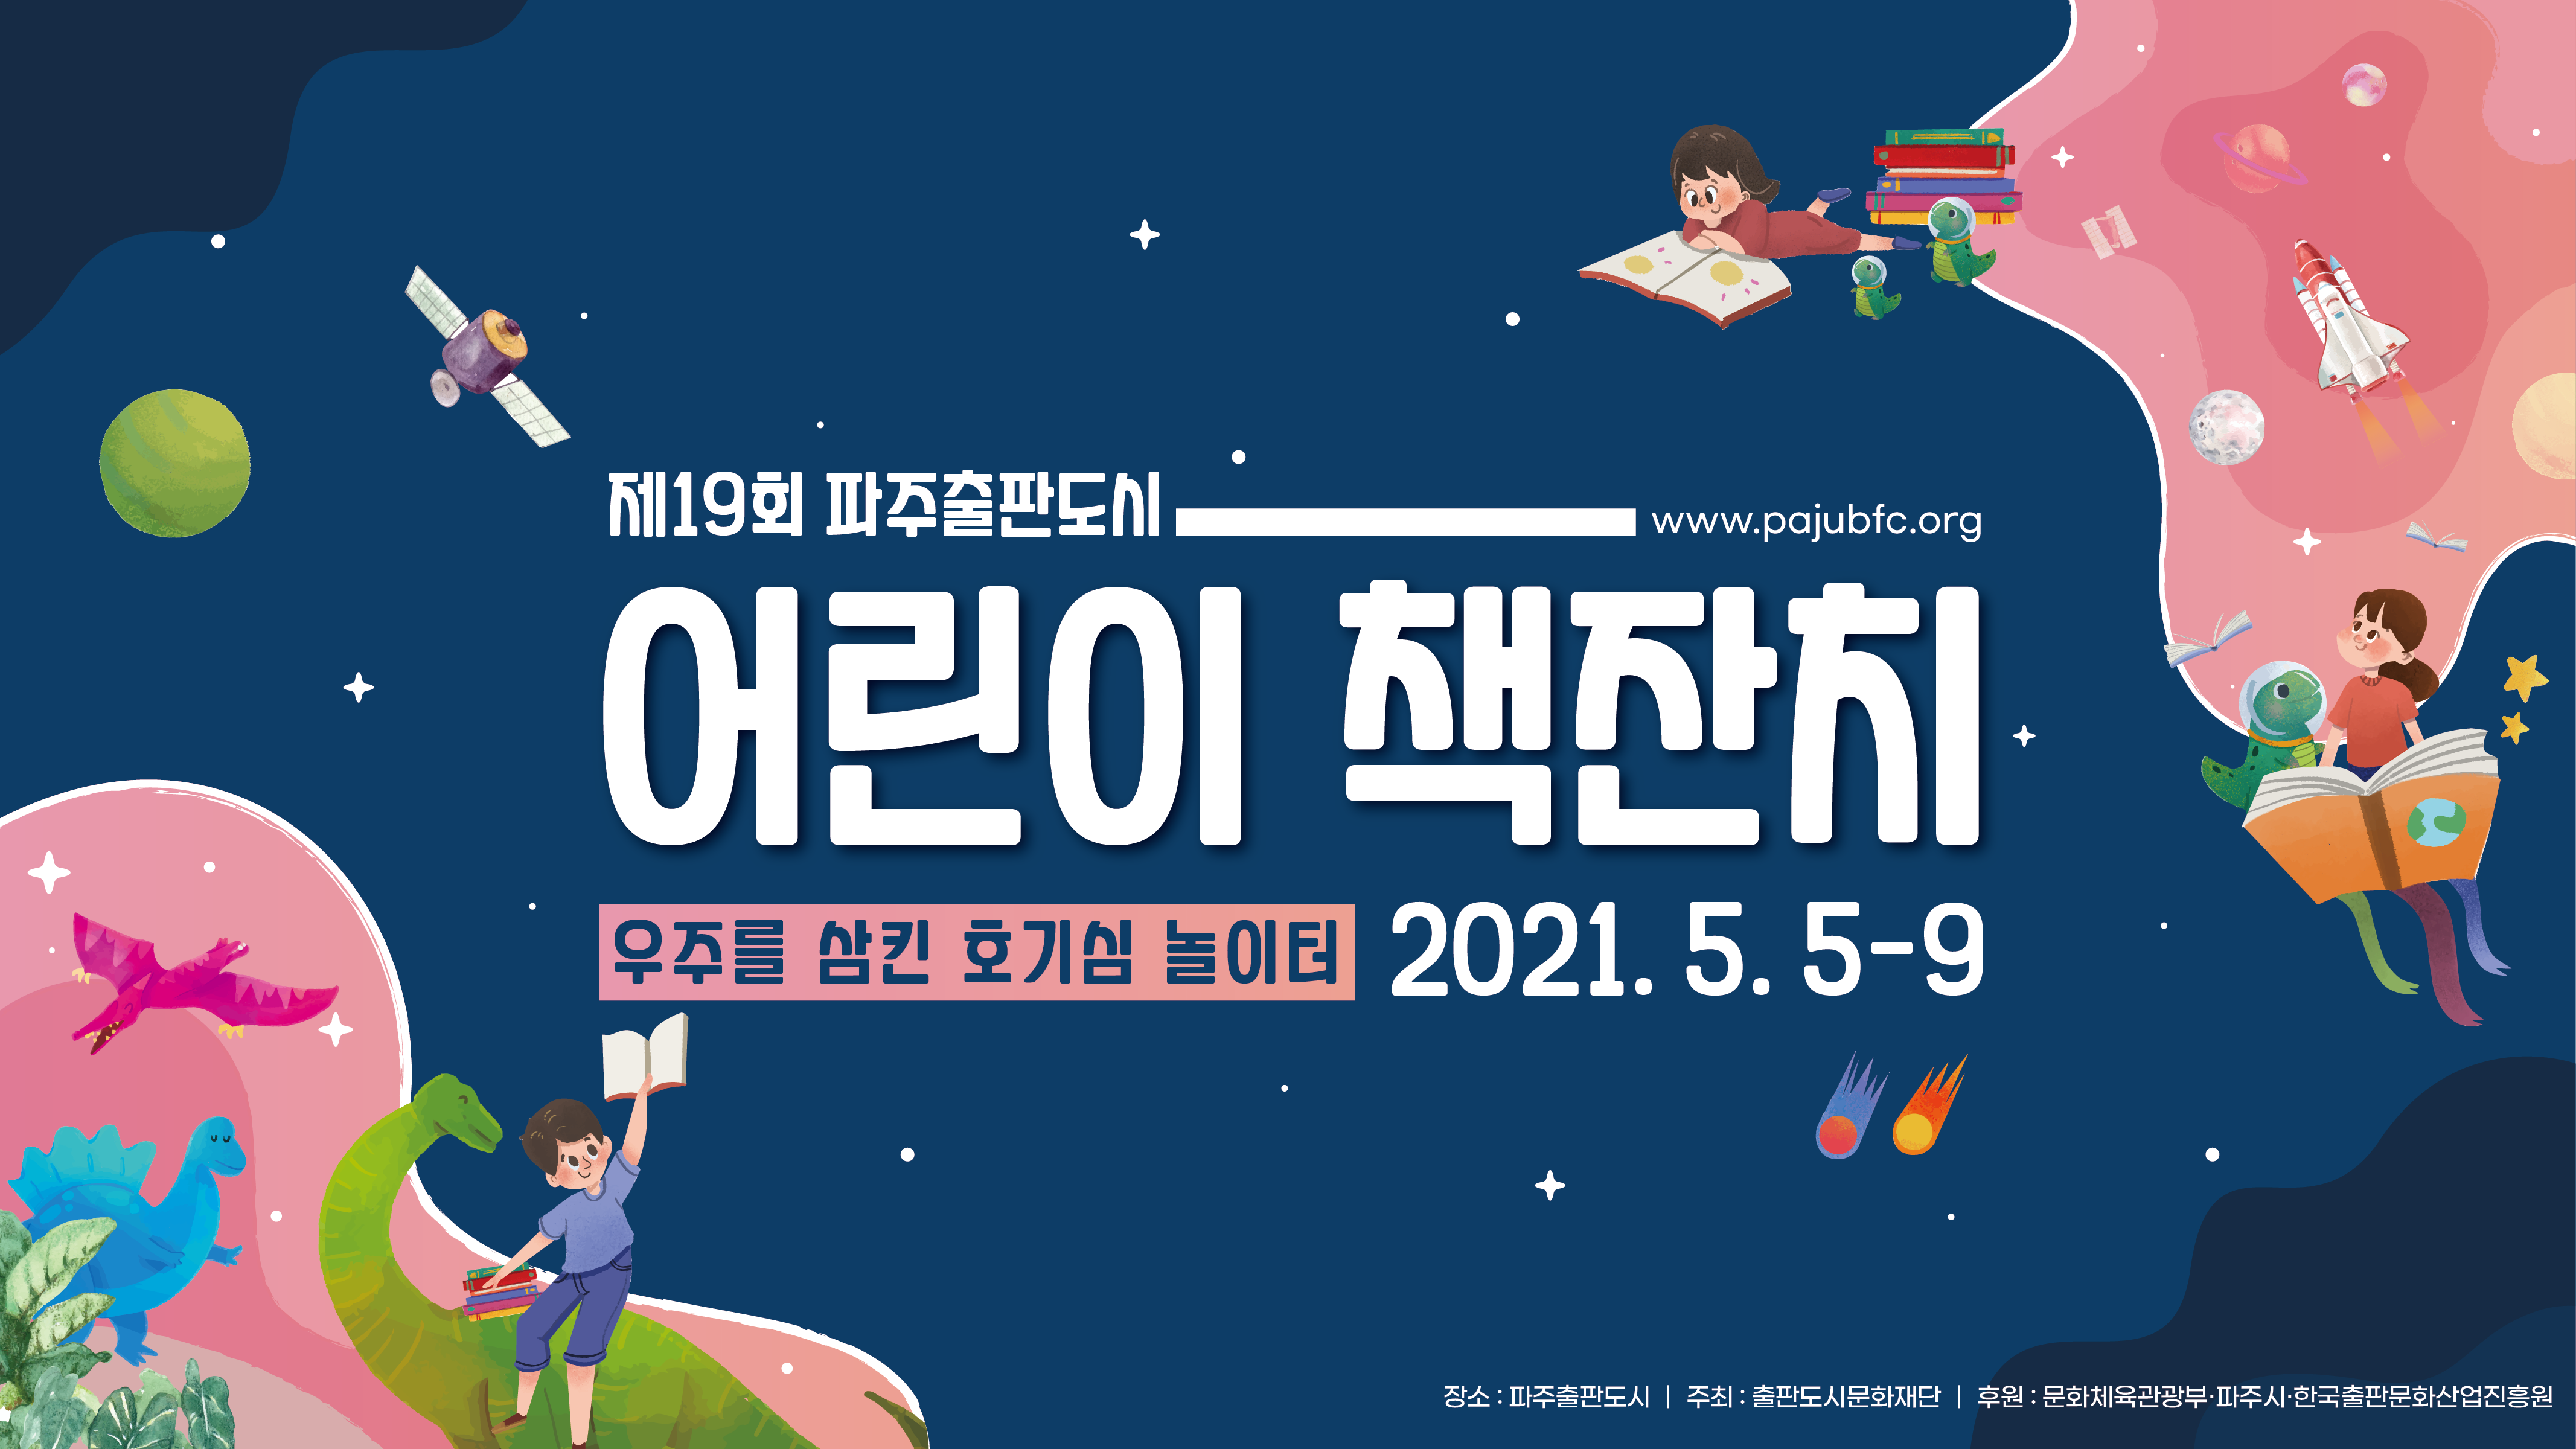 제19회 파주출판도시 어린이 책잔치 우주를 삼킨 호기심 놀이터 2021.5.5-9